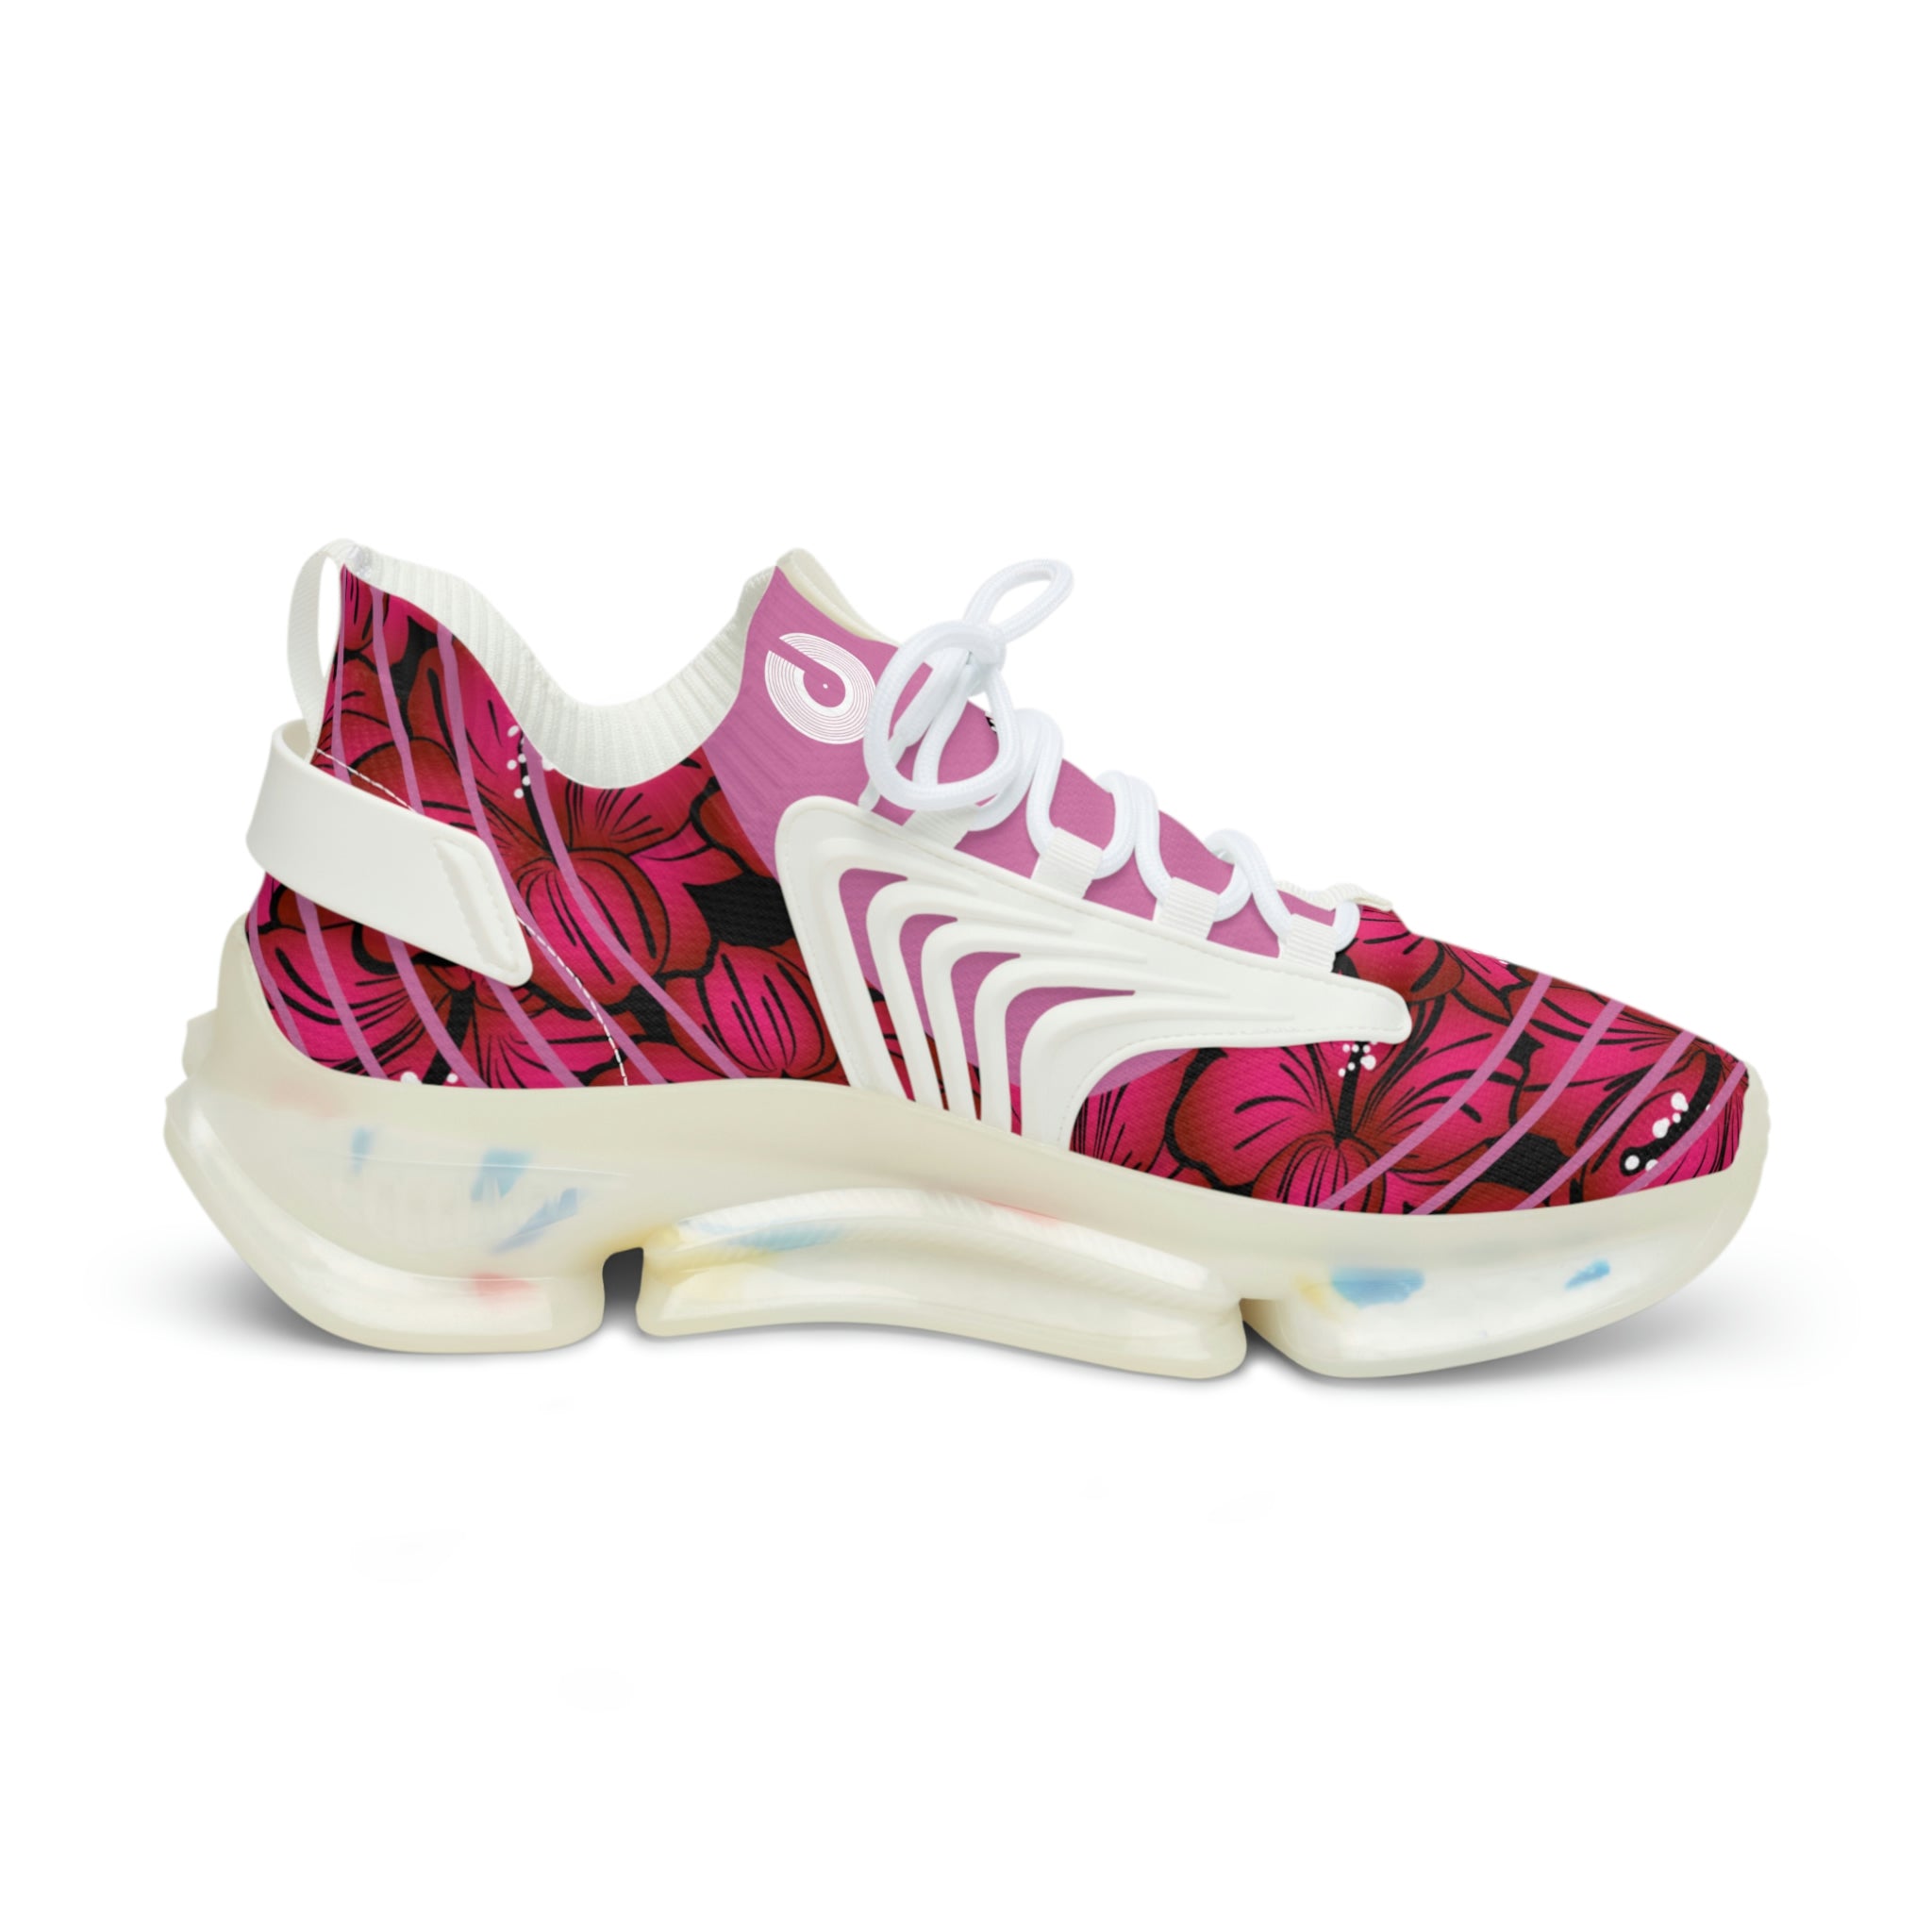 Polaris Sport Sneakers- Pink Flowers